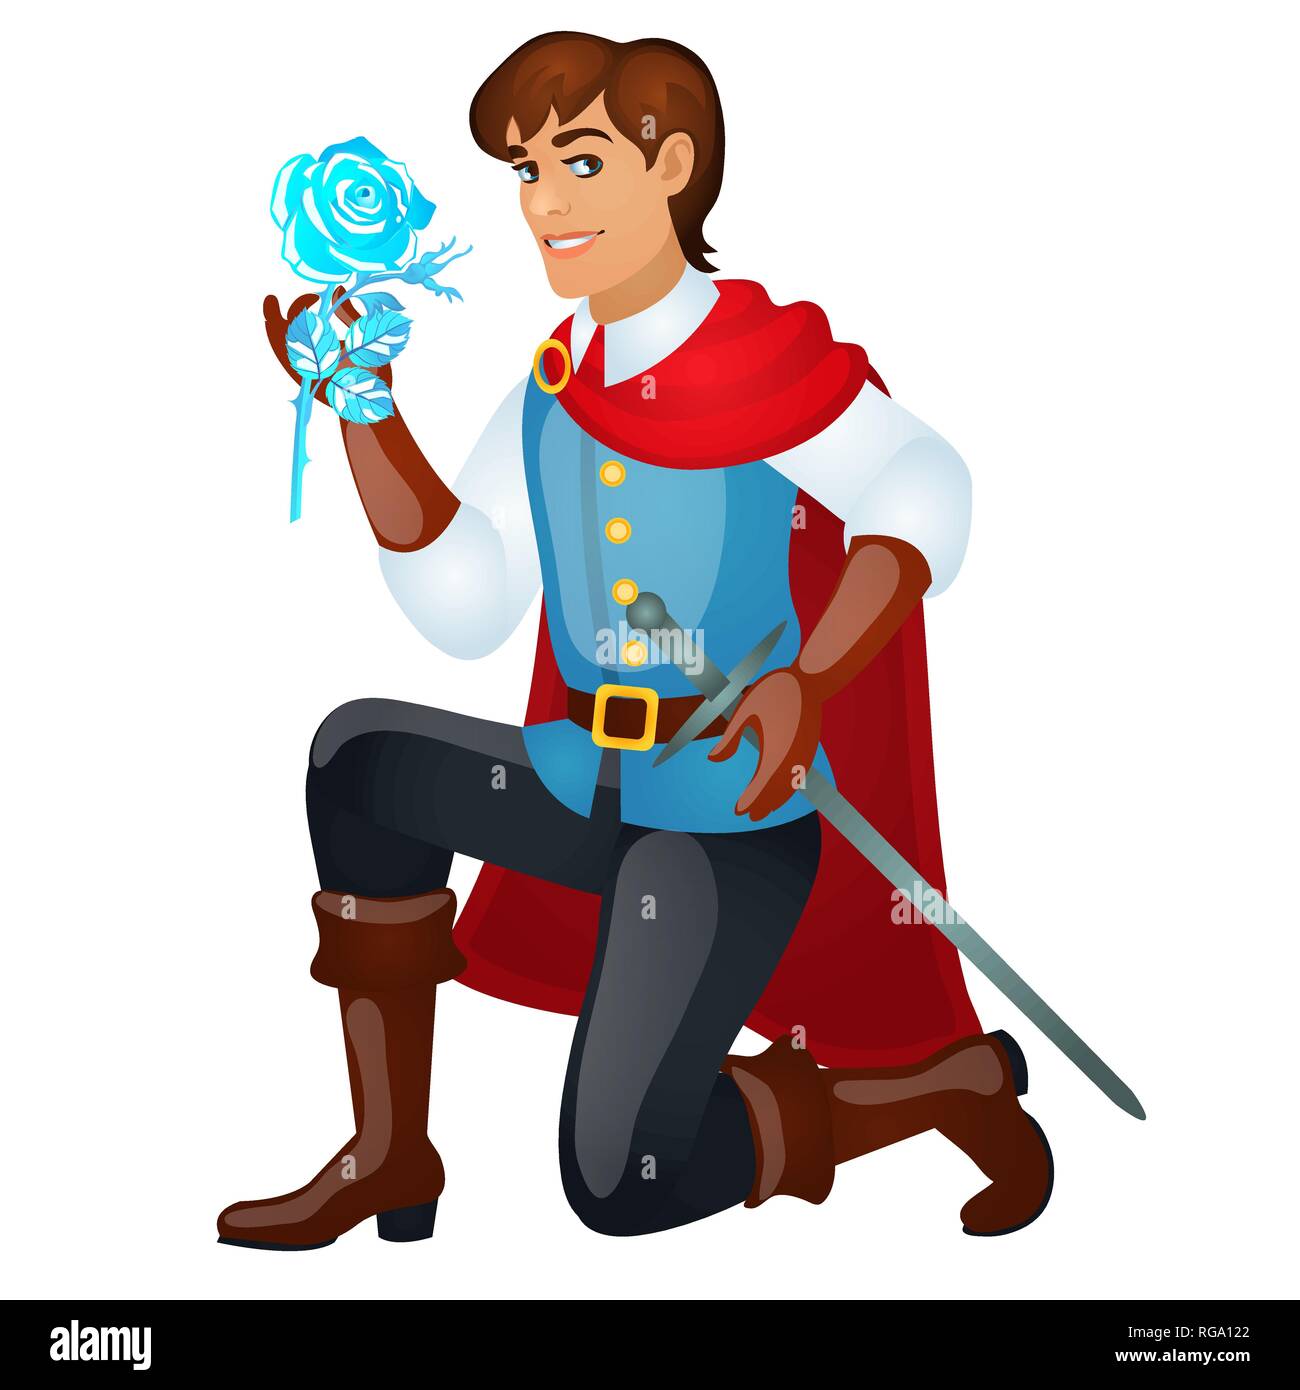 Jungen hübschen Prinzen mit einem Schwert mit einem Ice Rose auf weißem Hintergrund. Vektor cartoon Close-up Abbildung. Stock Vektor